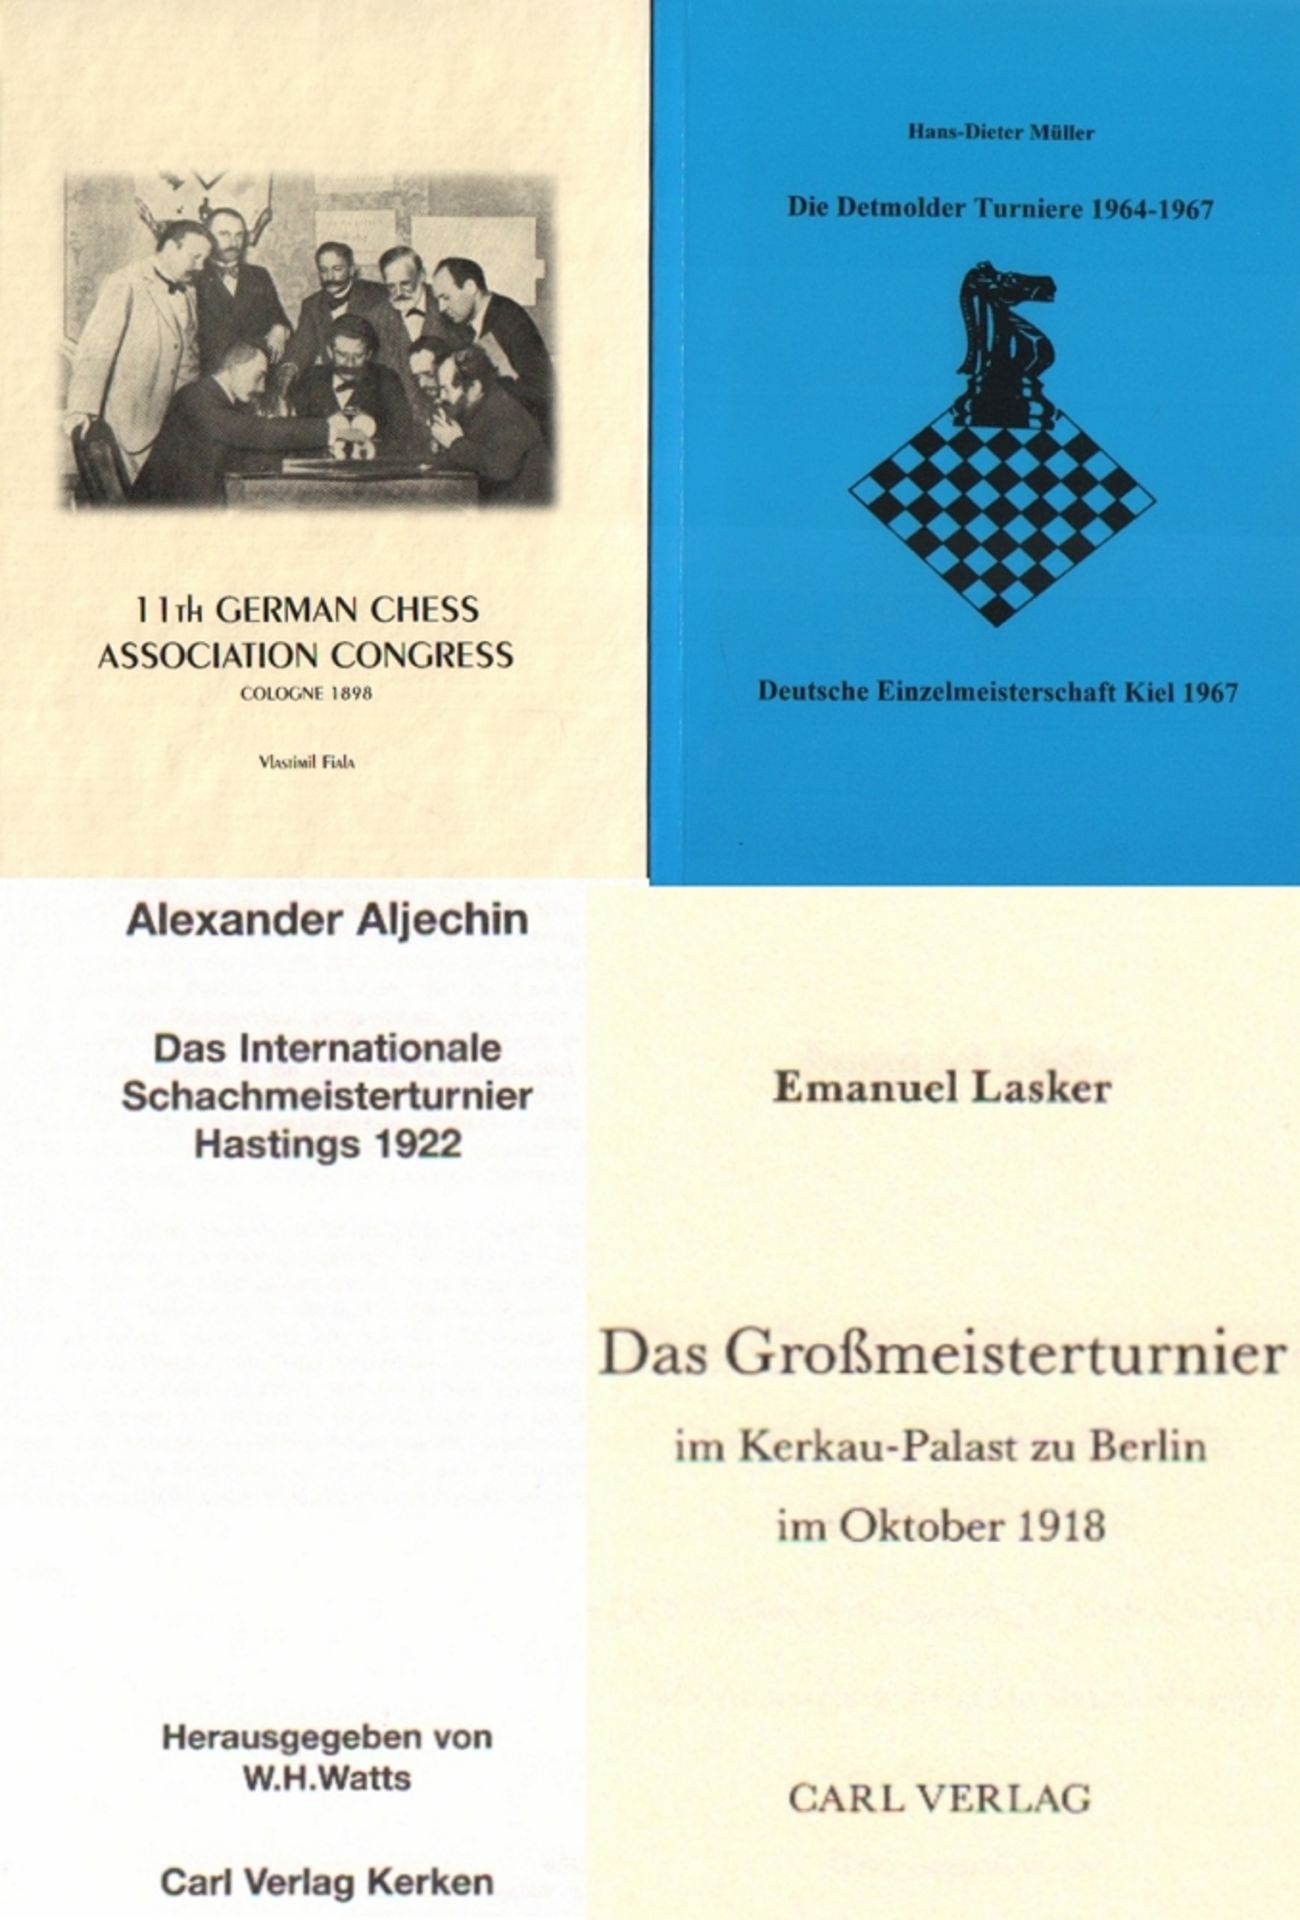 Detmold 1964 – 1967. Müller, H. - D. Die Detmolder Turniere 1964 - 1967. Deutsche